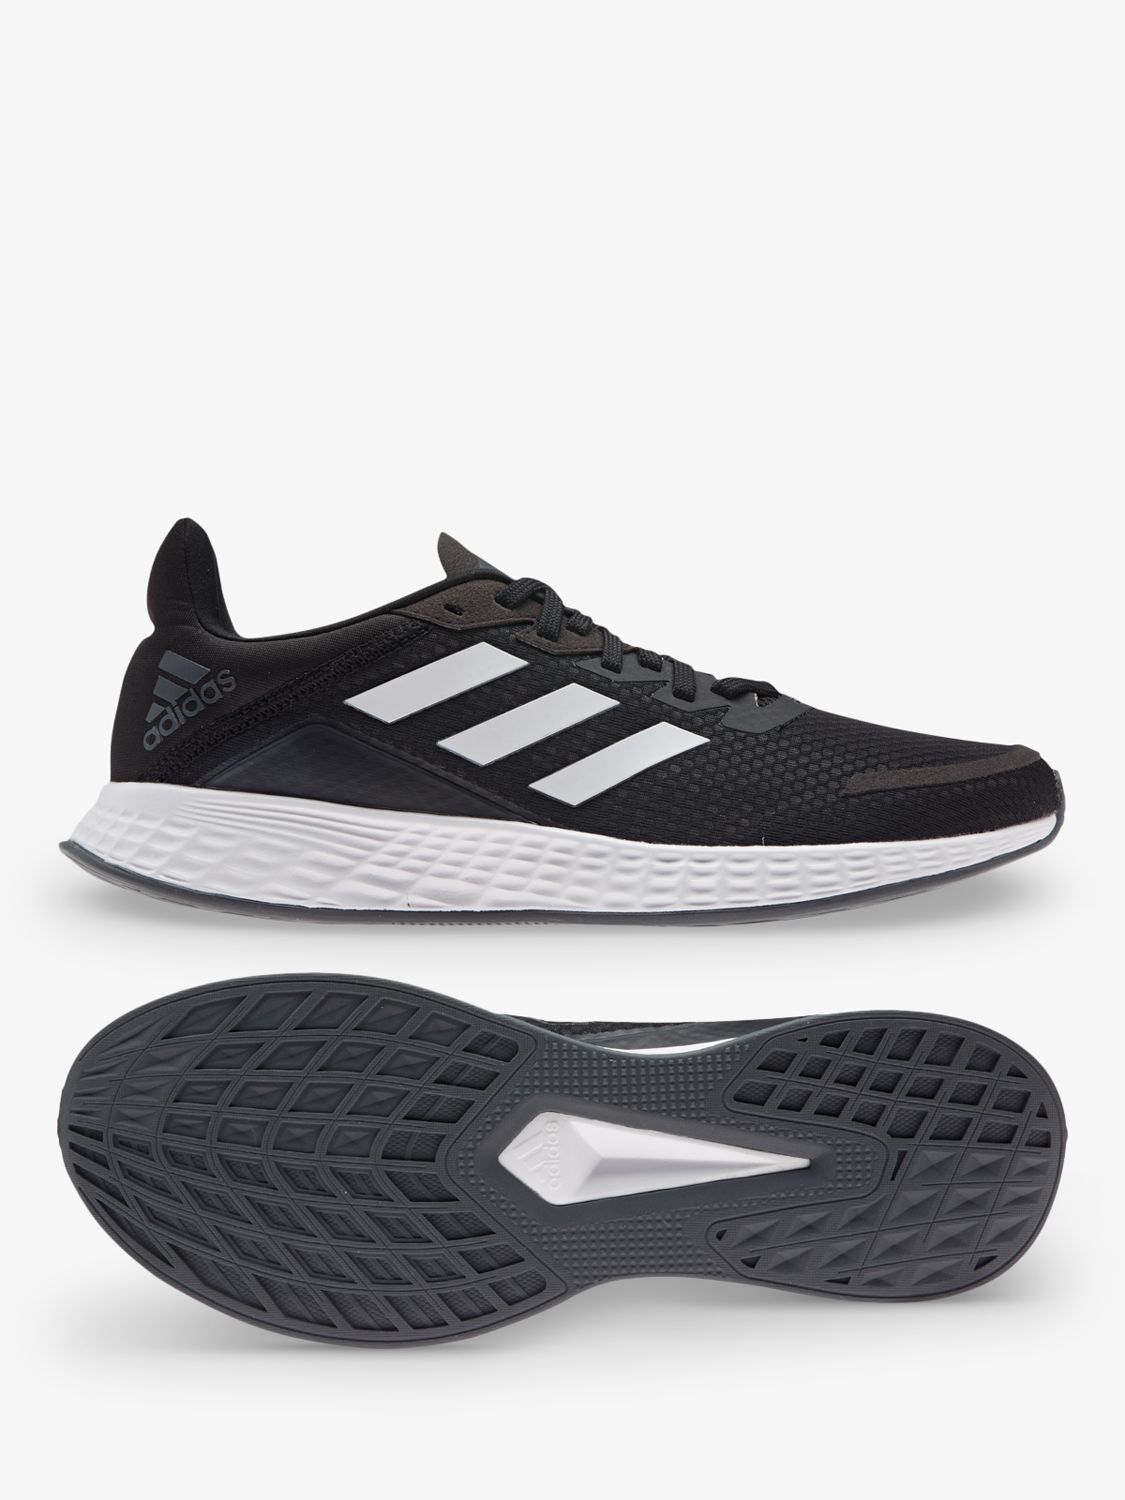 adidas Duramo SL Men's Running Shoes, Core Black/Cloud White/Grey Six ...